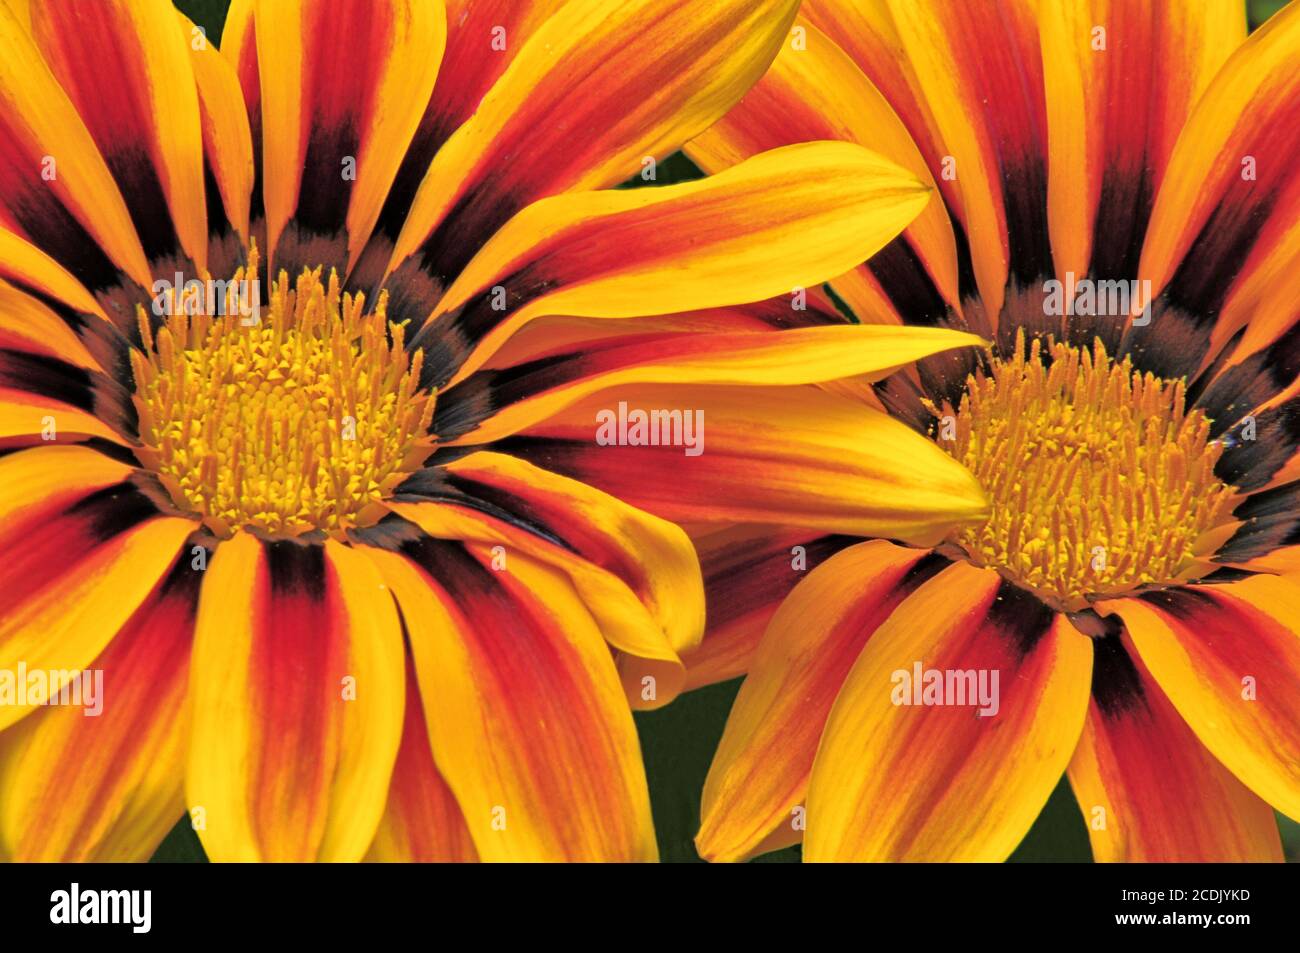 Aufmerksamkeitsstarke Nahaufnahme von zwei Blüten der Gazania (afrikanische Gänseblümchen) mit leuchtend farbigen Blütenblättern aus Gelb, Rot, Orange und Bronze. Stockfoto